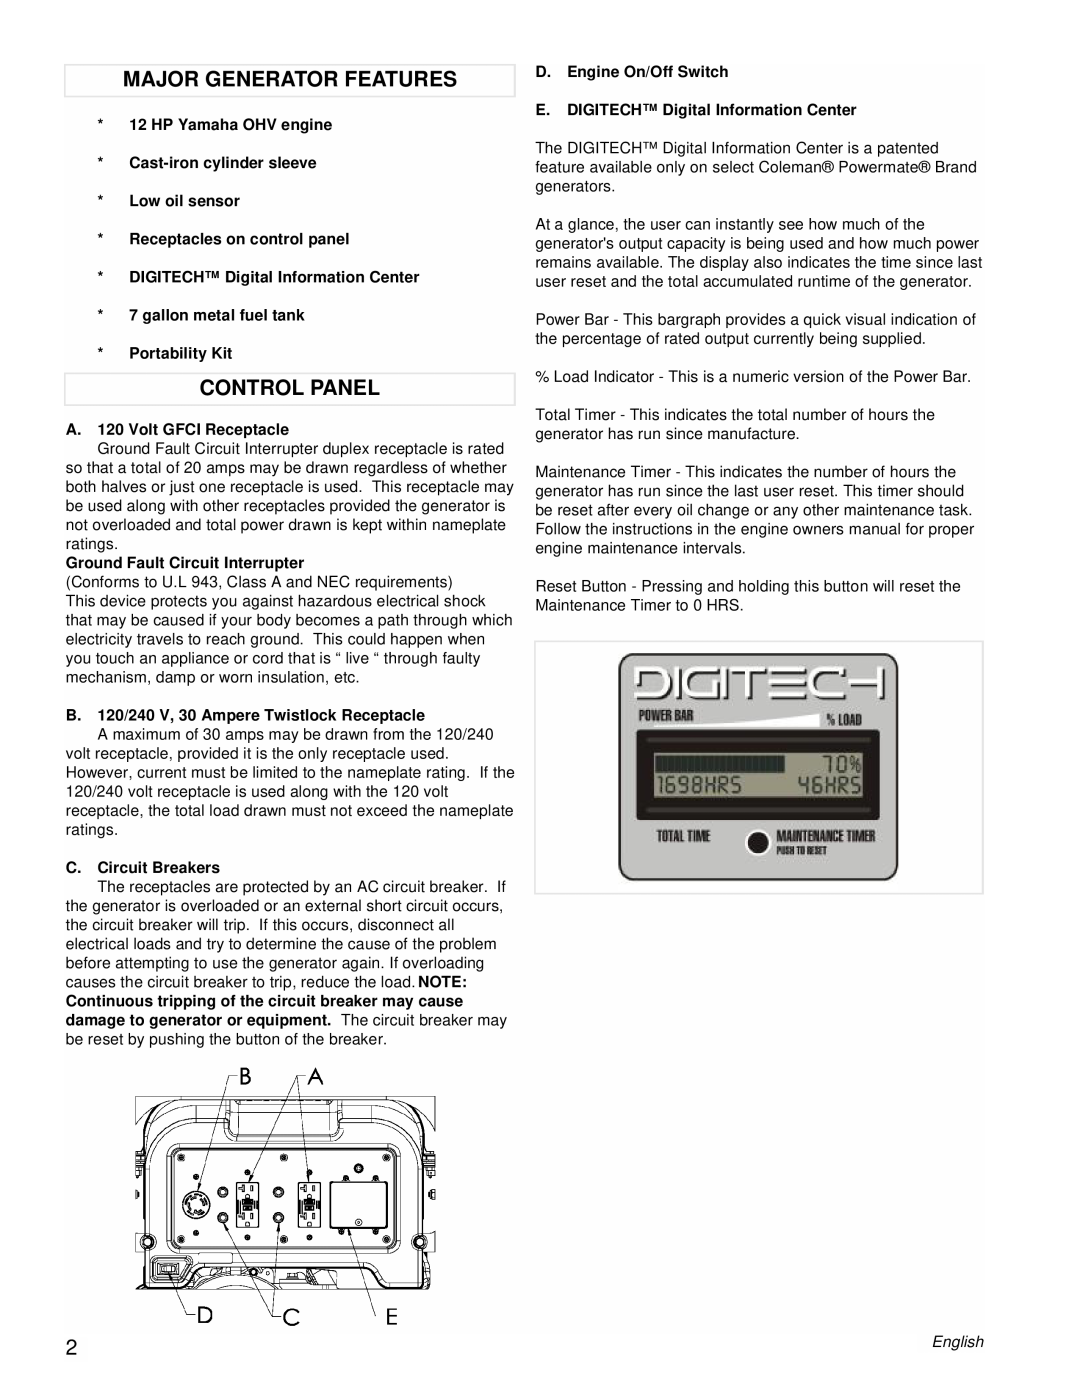 Powermate PM0606750 manual Major Generator Features, Control Panel 